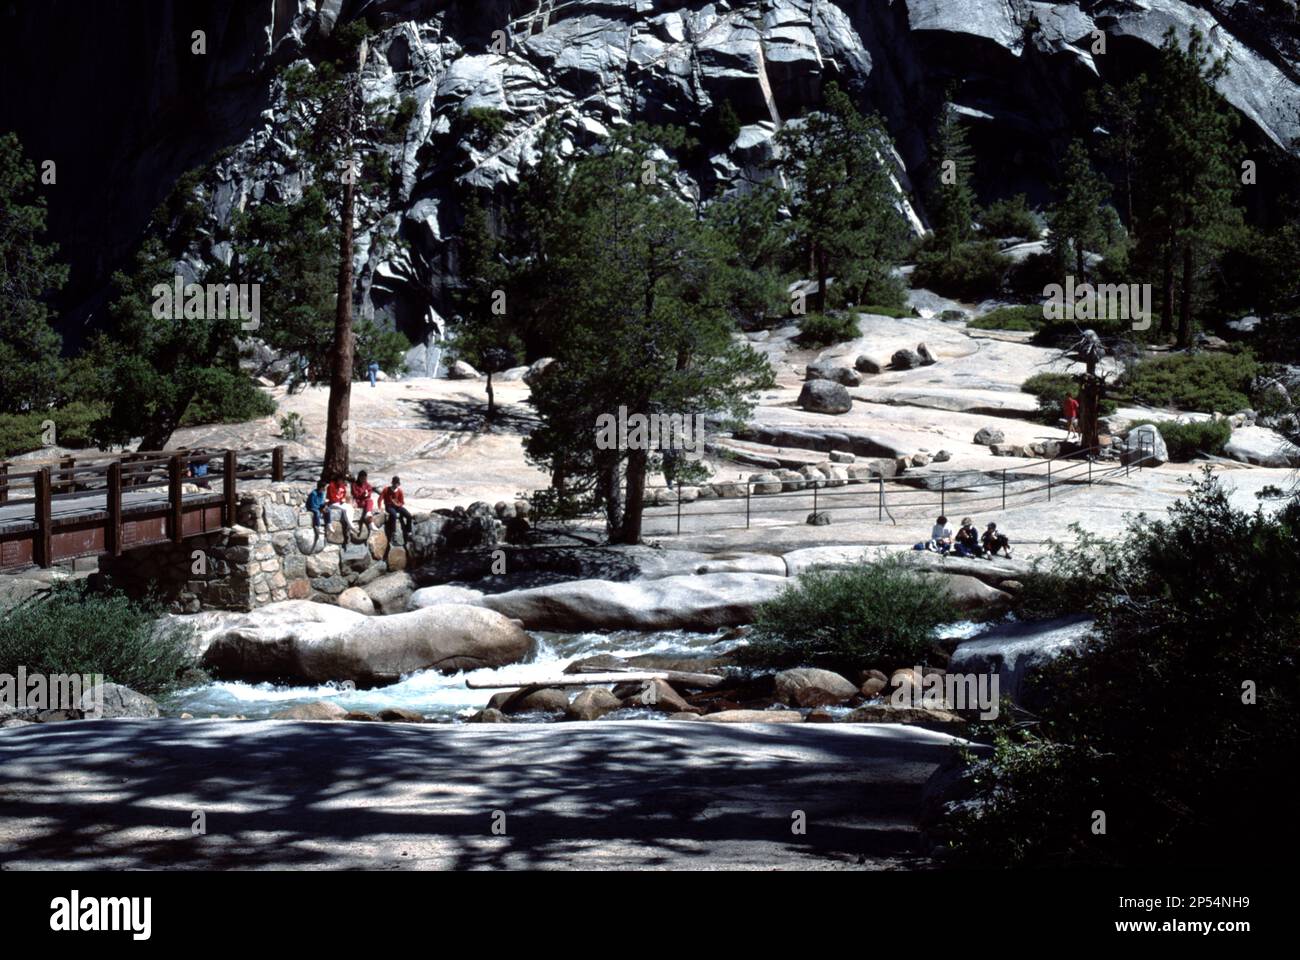 Parque Nacional de Yosemite. APROX. EE.UU. 1984. Nevada Falls. Nevada Fall es una cascada de 181 m (594 pies) de altura en el río Merced en el Parque Nacional Yosemite, California. Se encuentra debajo de la cúpula de granito, Liberty Cap, en el extremo oeste de Little Yosemite Valley. Caminata extenuante. Paseos en mula para los visitantes disponibles si el tiempo lo permite desde los establos de Wawona. Foto de stock